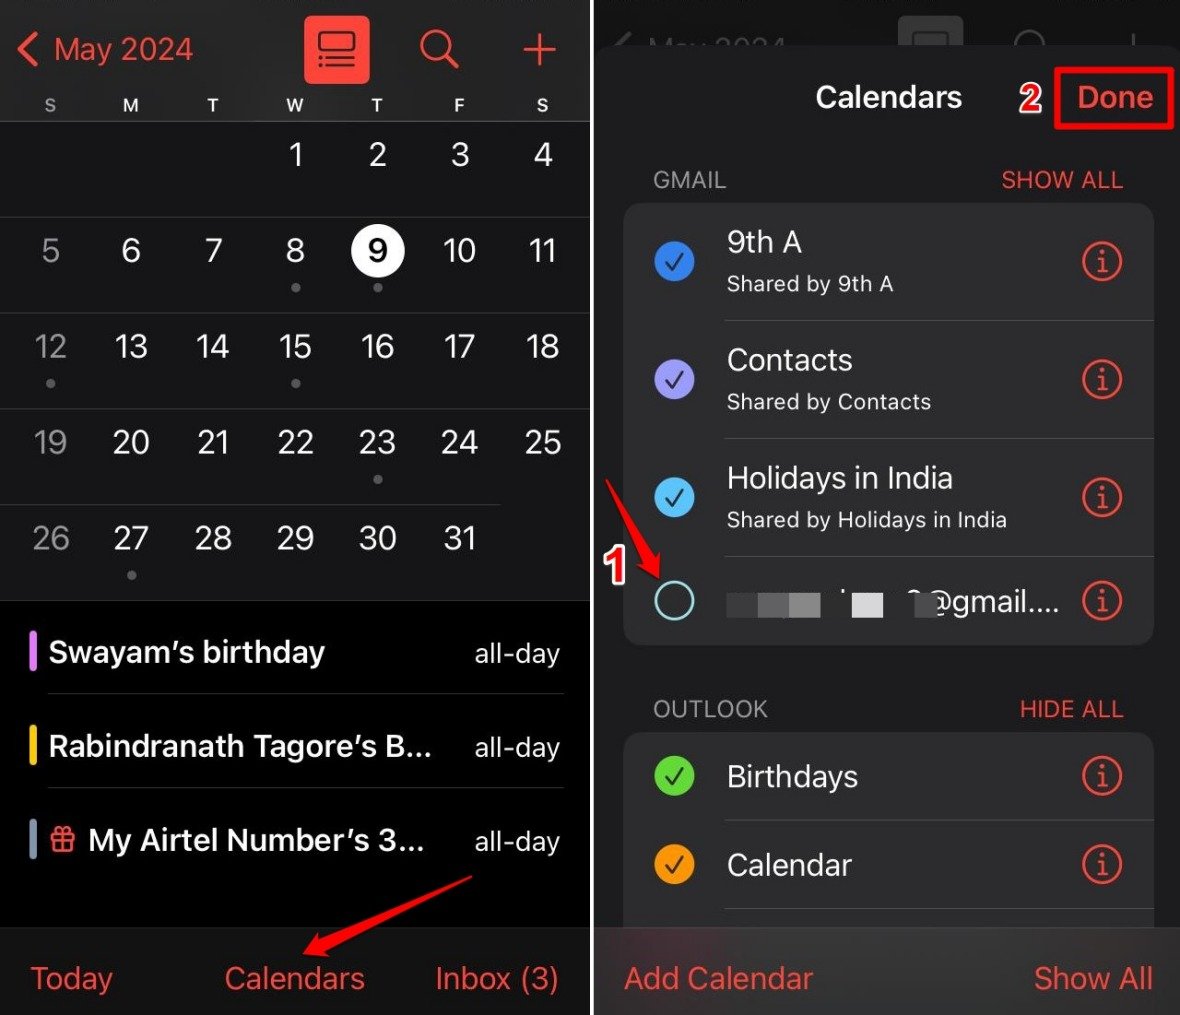 unselect-account-for-an-event-on-Calendar-app-iOS